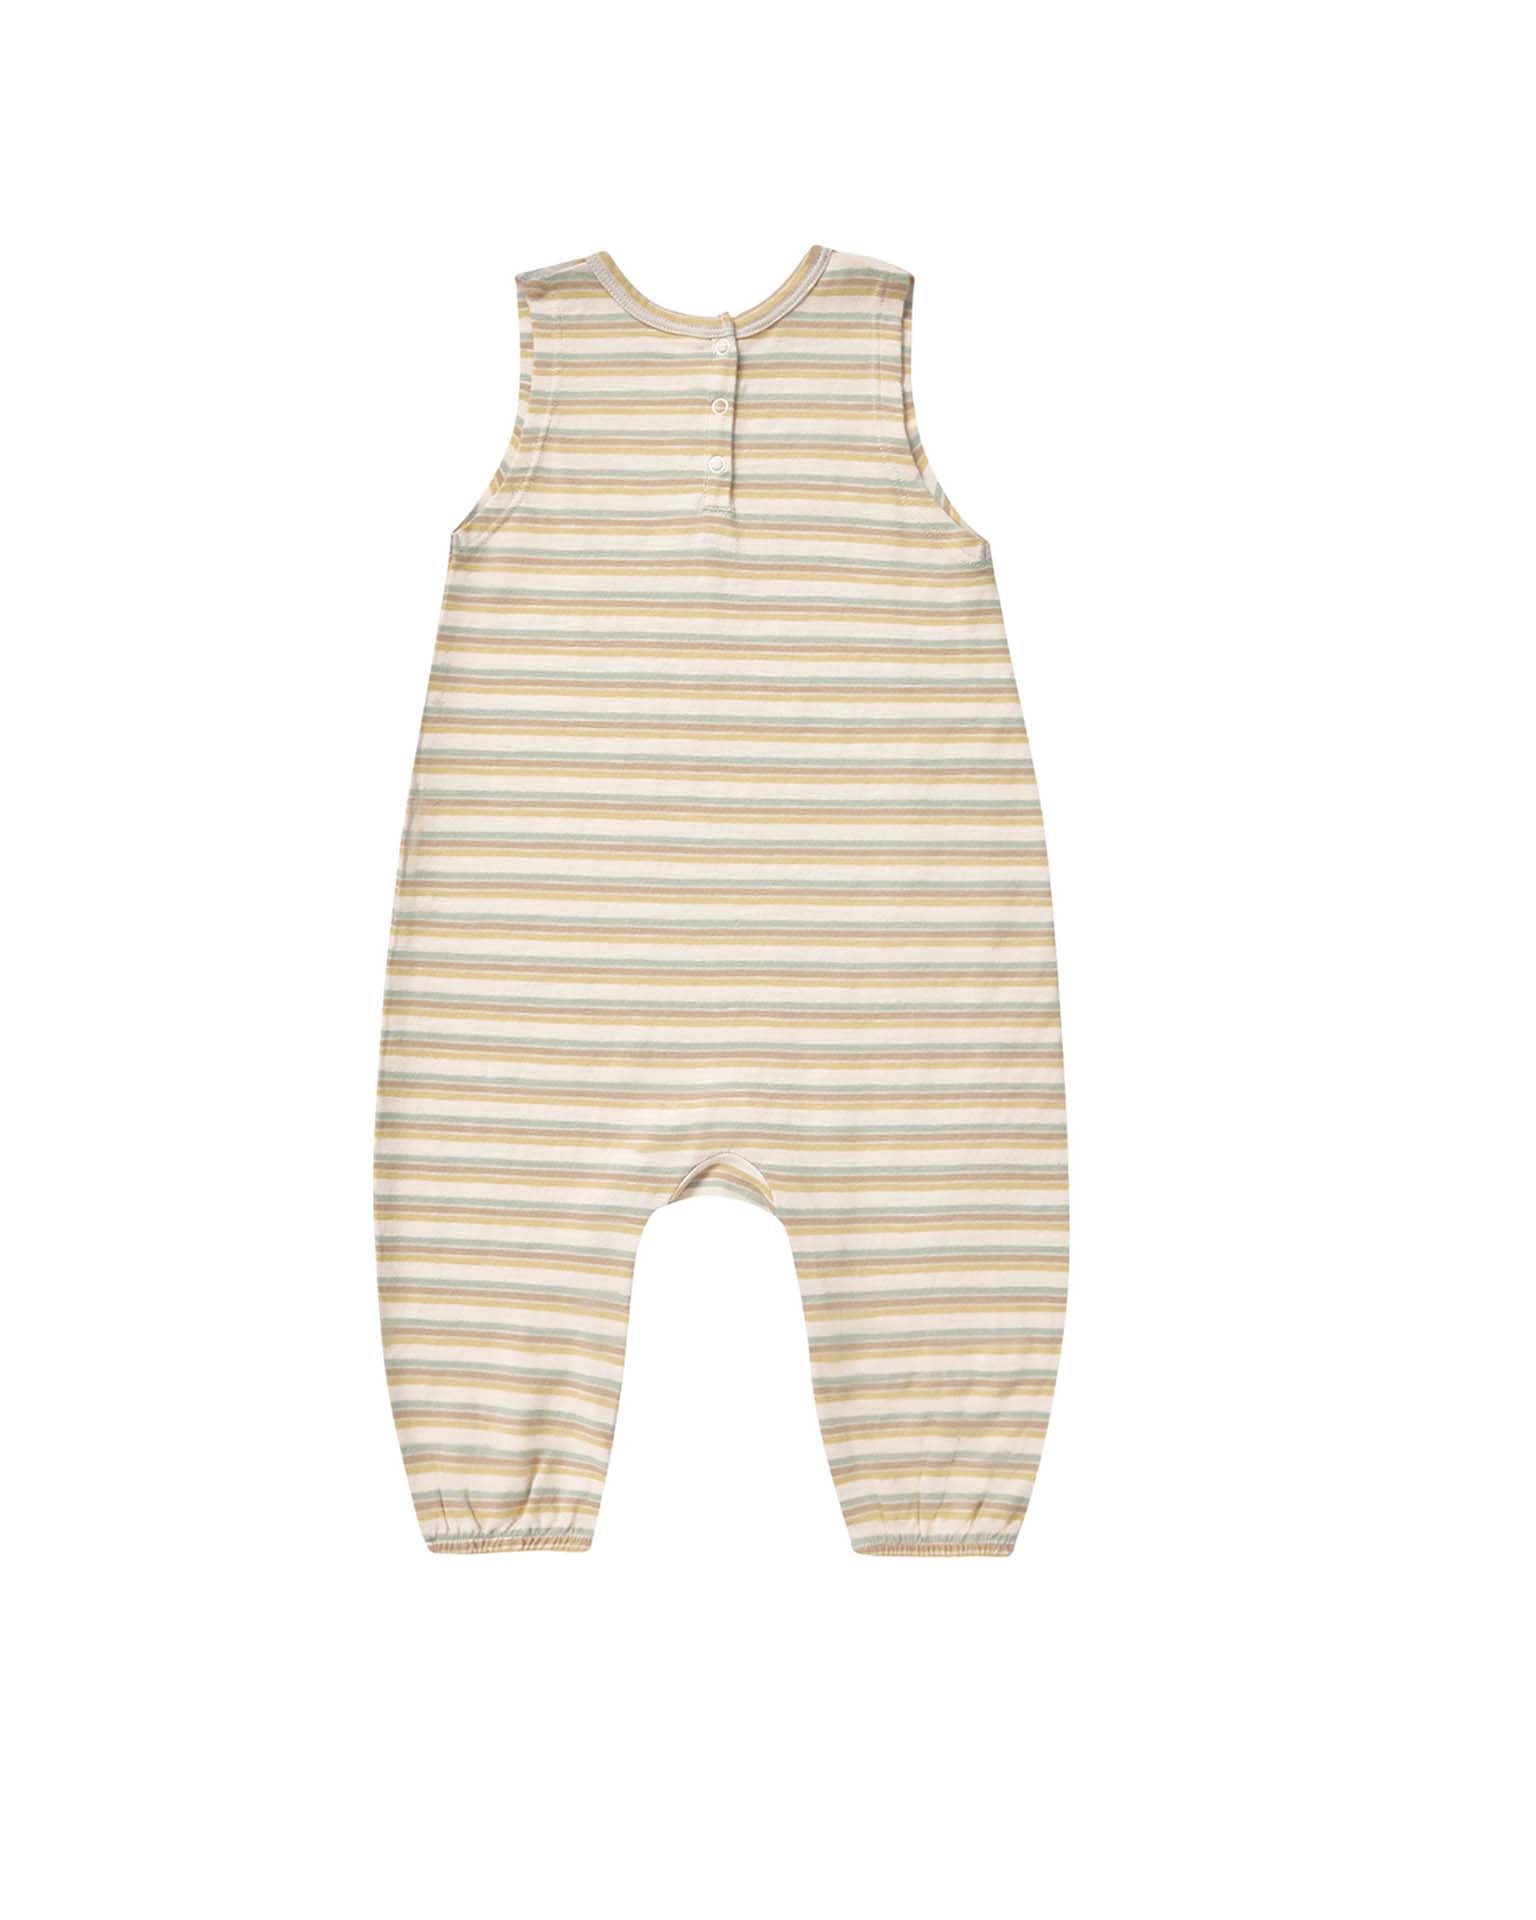 Little rylee + cru baby mills jumpsuit in vintage stripe